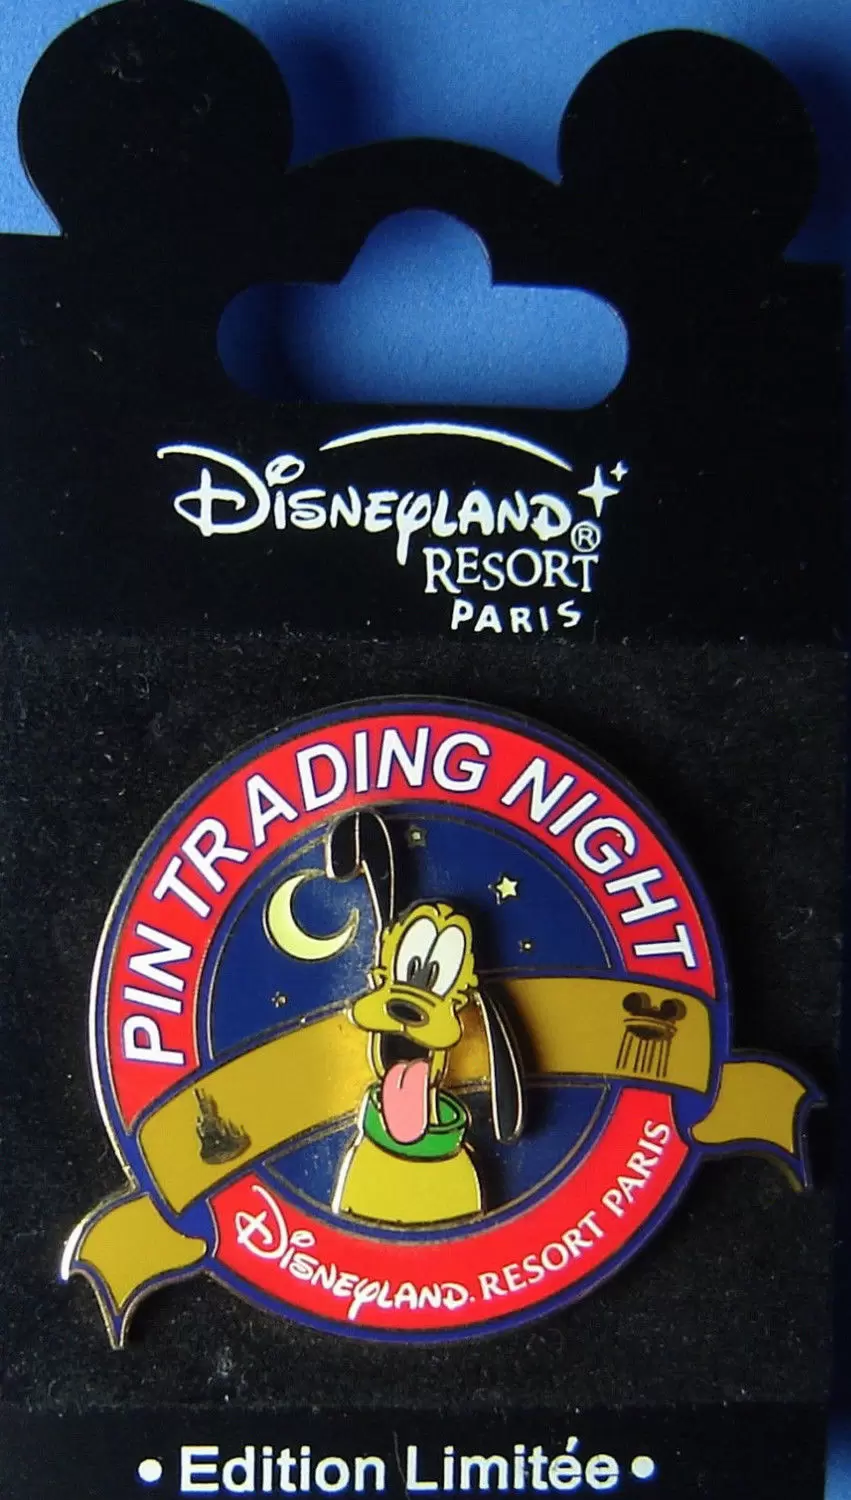 Disney - Pin Trading Night - Pluto